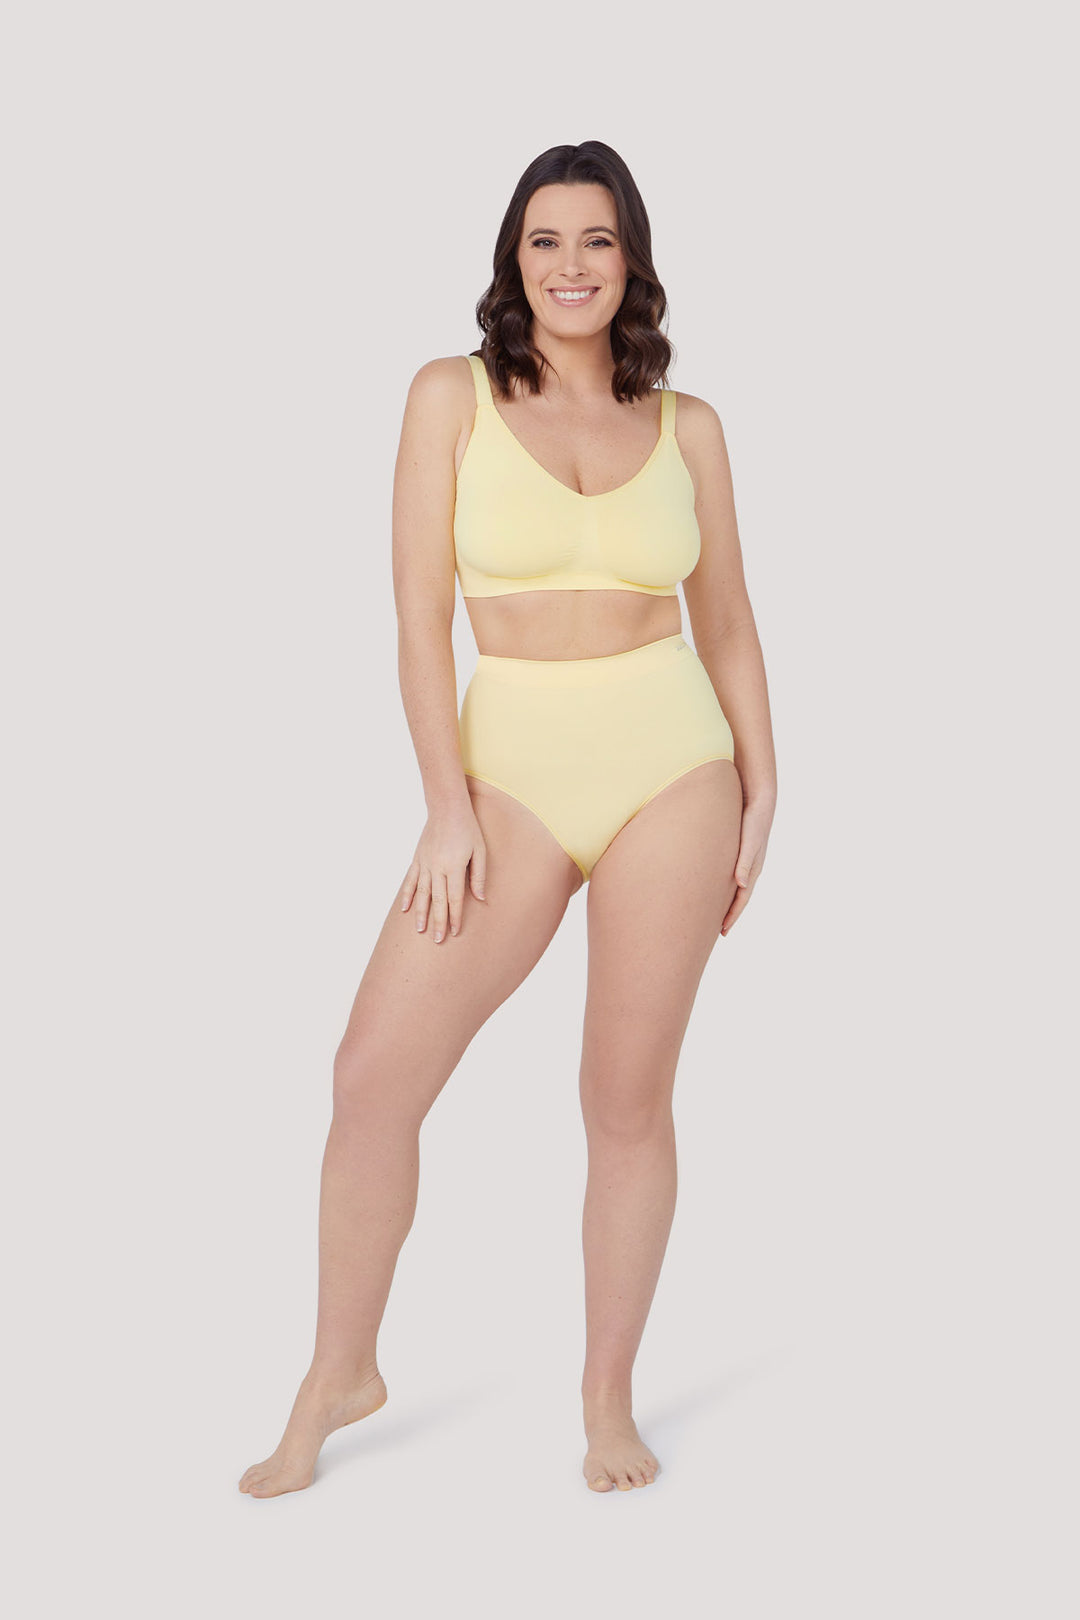 Women's slimming & firming high Waist underwear 2 Pack | Bella Bodies Australia | Lemon